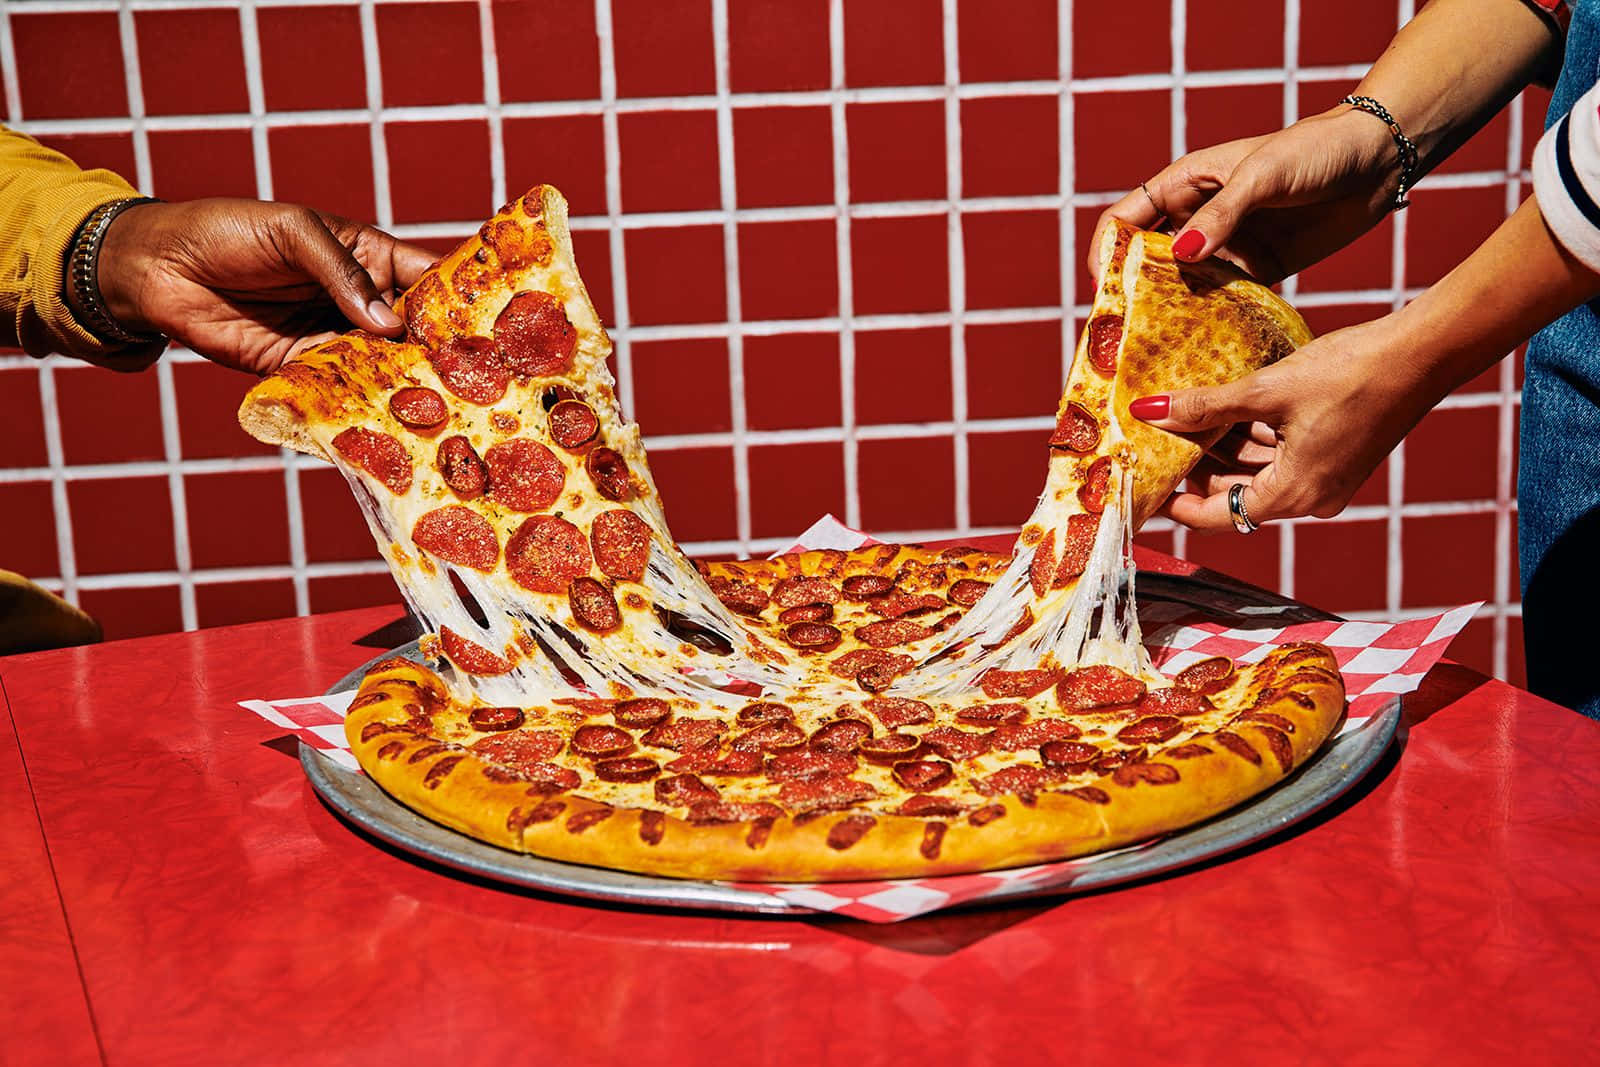 Pepperonisulla Pizza Su Uno Sfondo Rosso Estetico Per L'immagine Della Stanza